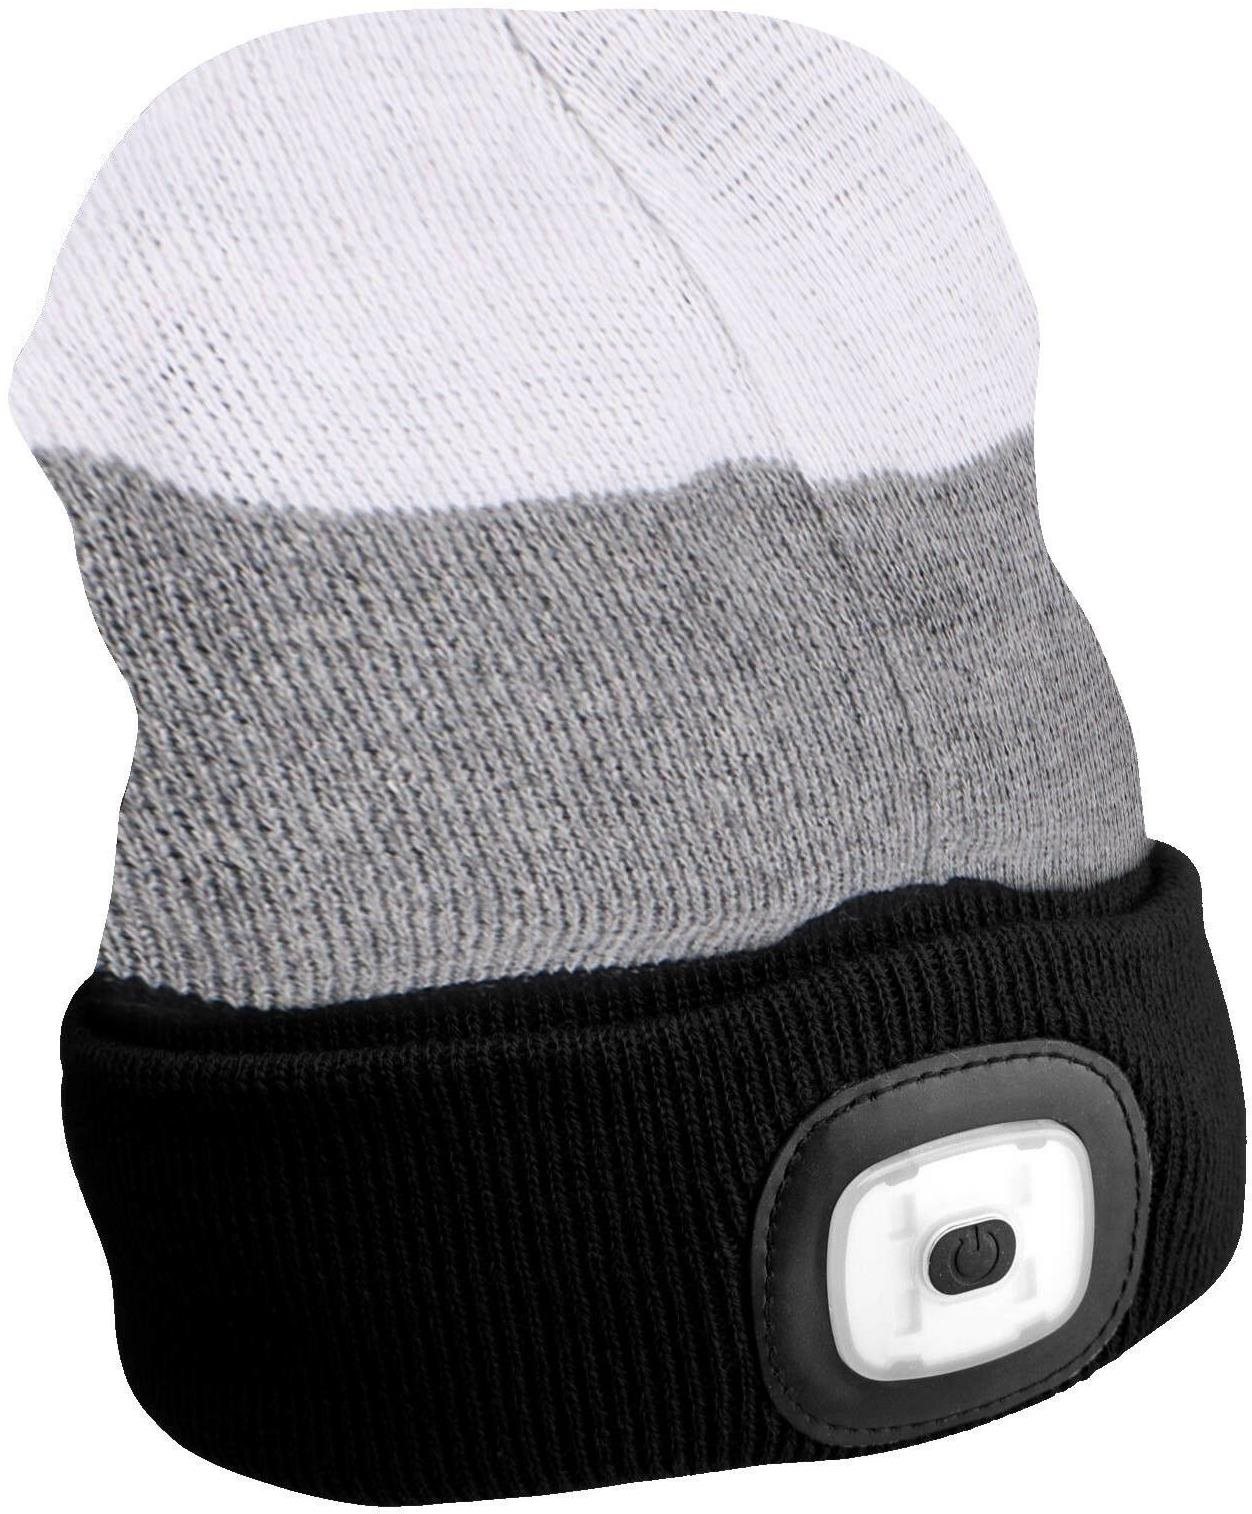 SIXTOL čepice s čelovkou 180lm, nabíjecí, USB, univerzální velikost, bavlna/PE, černá/šedá/bílá